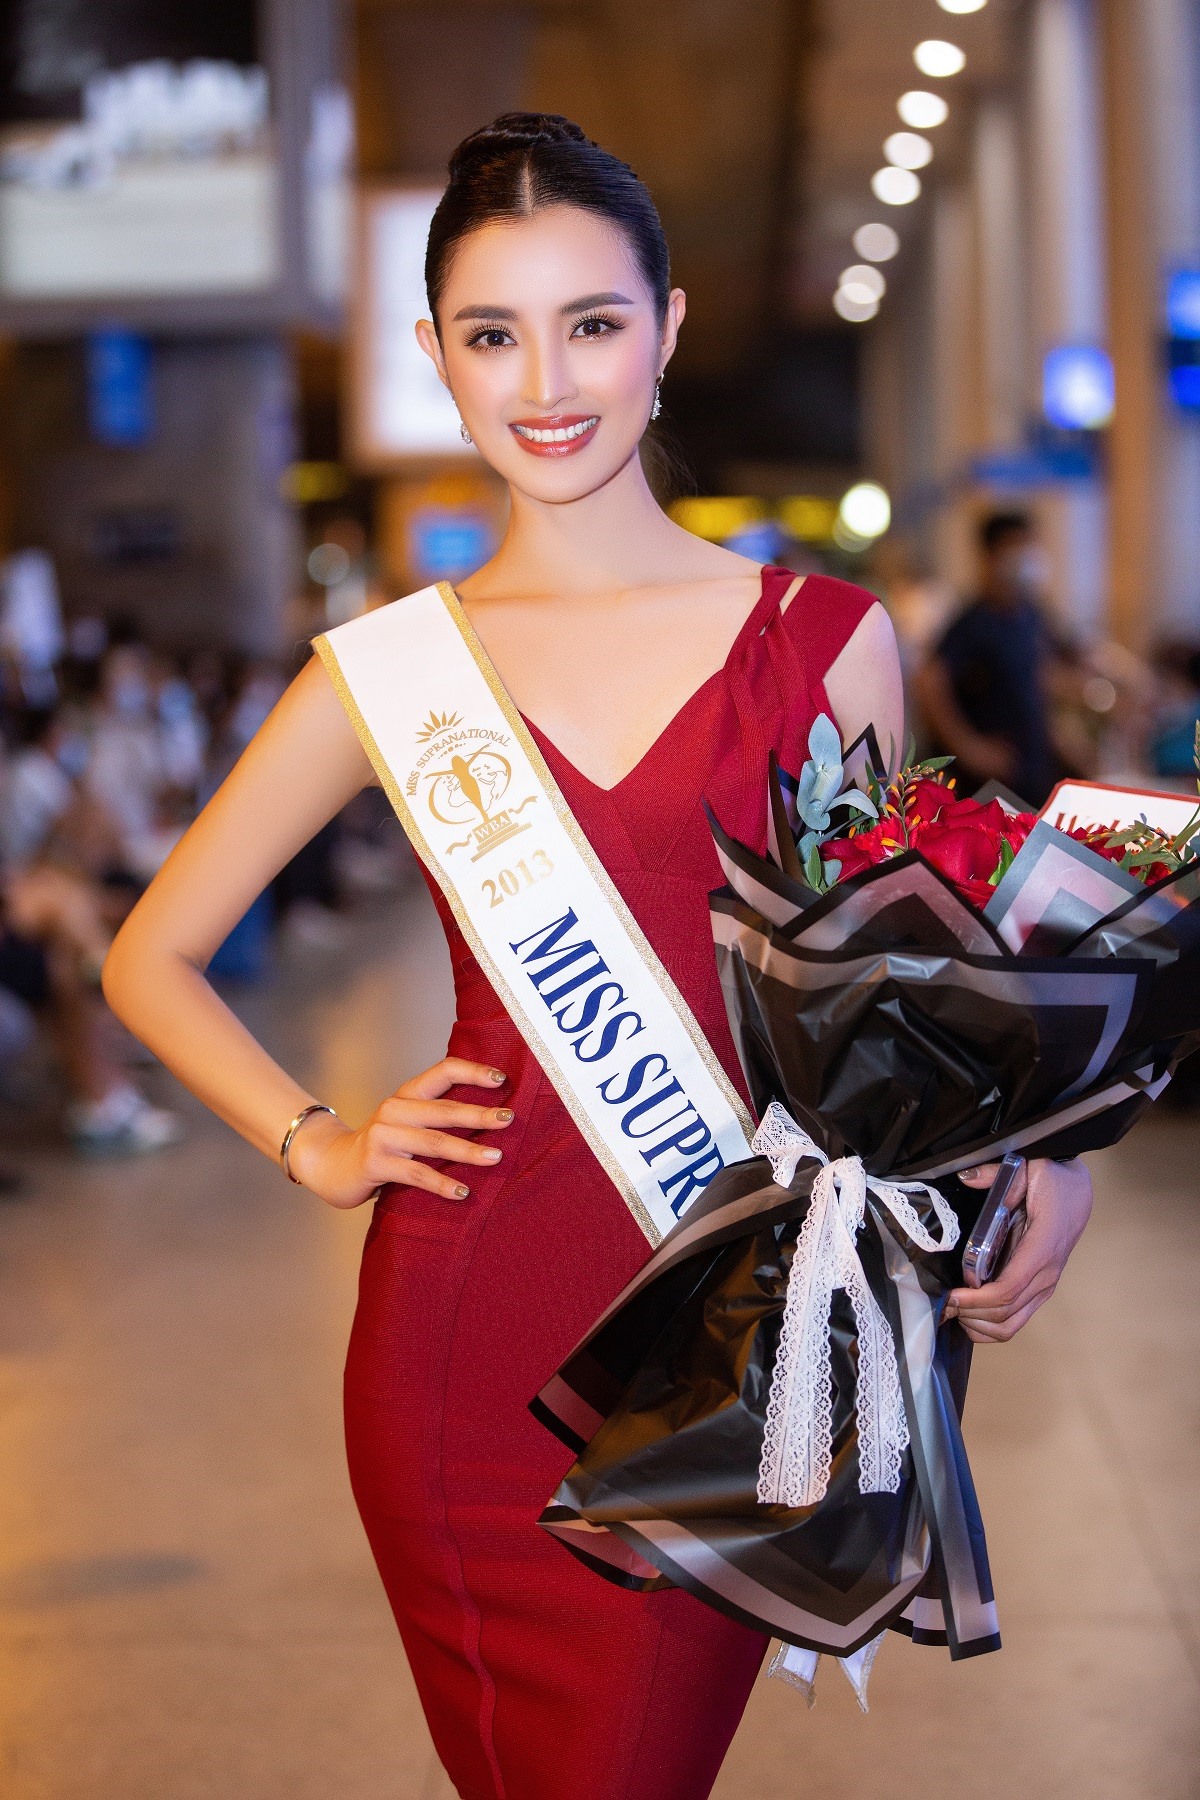 Hoa hậu Siêu quốc gia 2013 gửi lời chào tới khán giả khi đến Việt Nam